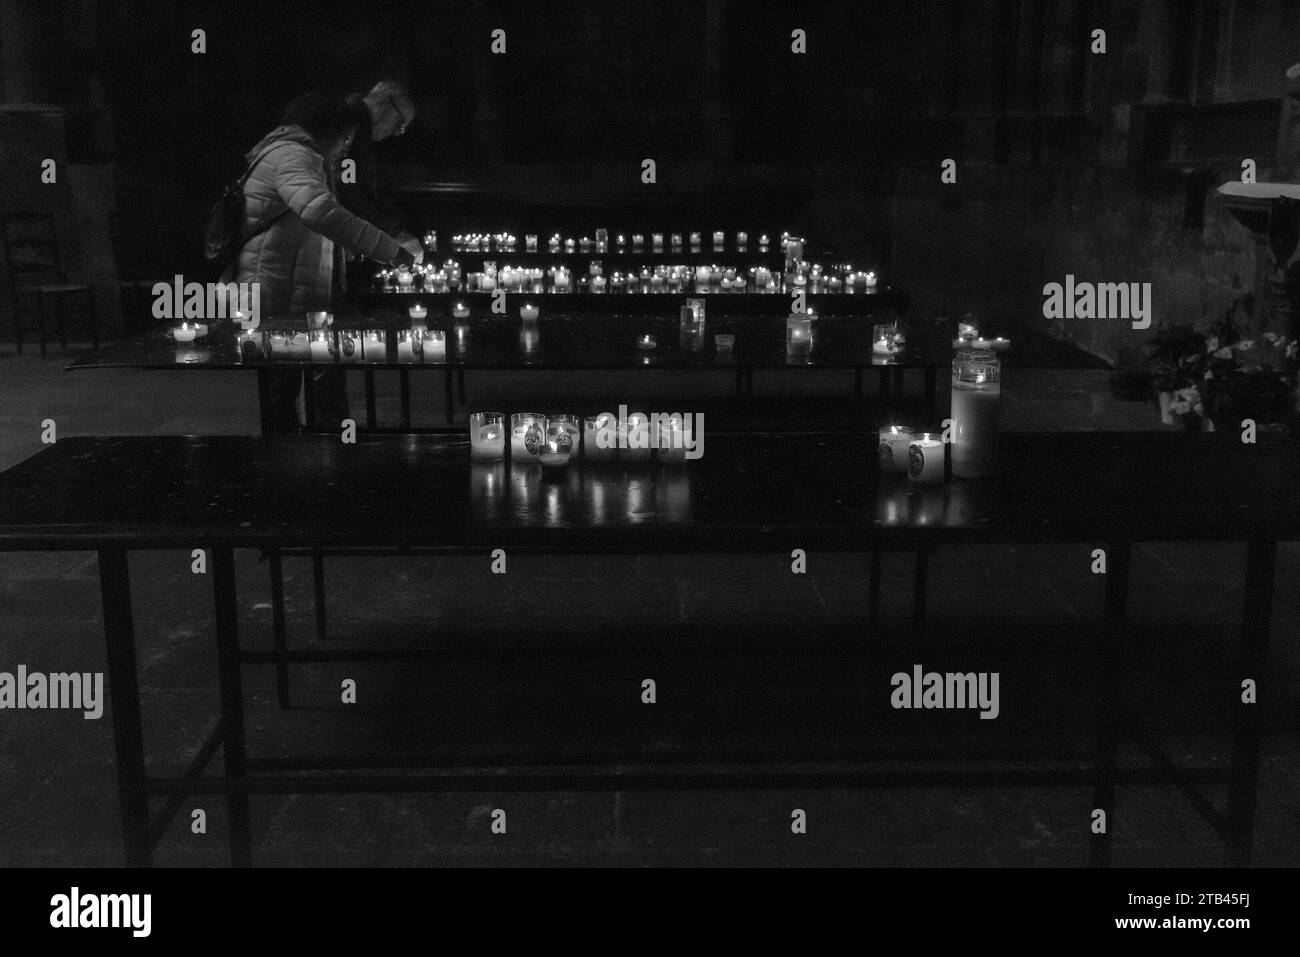 Metz, France - 26 décembre 2022 : couple d'âge moyen allumant des bougies dans la cathédrale Saint-Étienne le lendemain des vacances de Noël. Photo historique noir et blanc. Banque D'Images